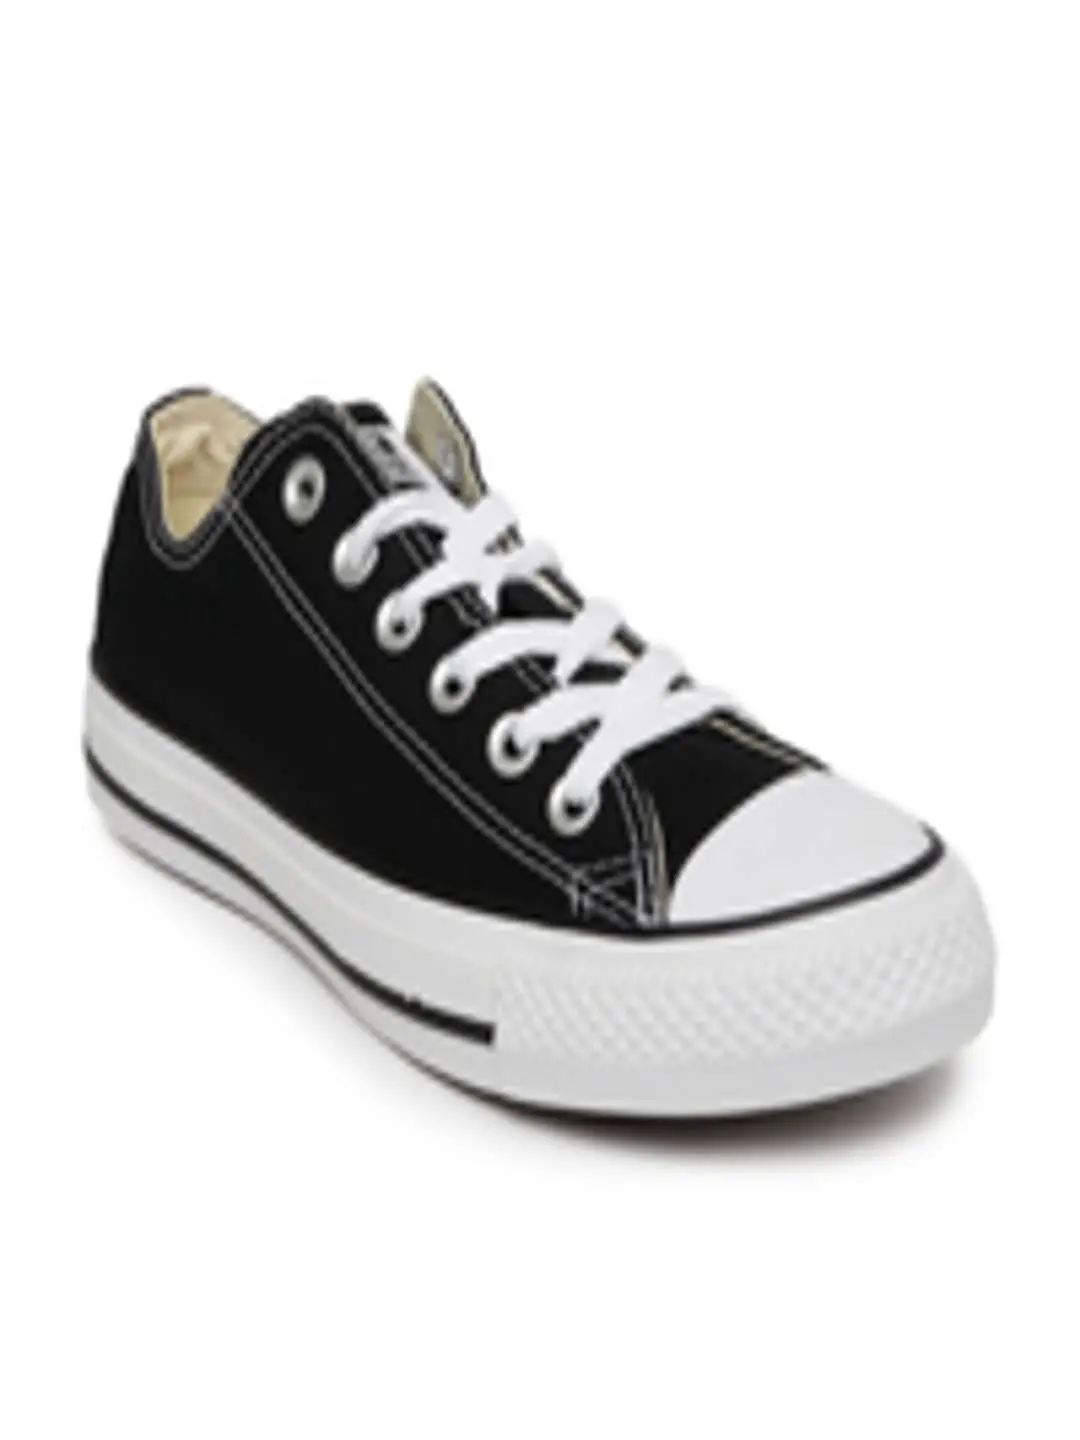 Buy Converse Unisex Black Sneakers